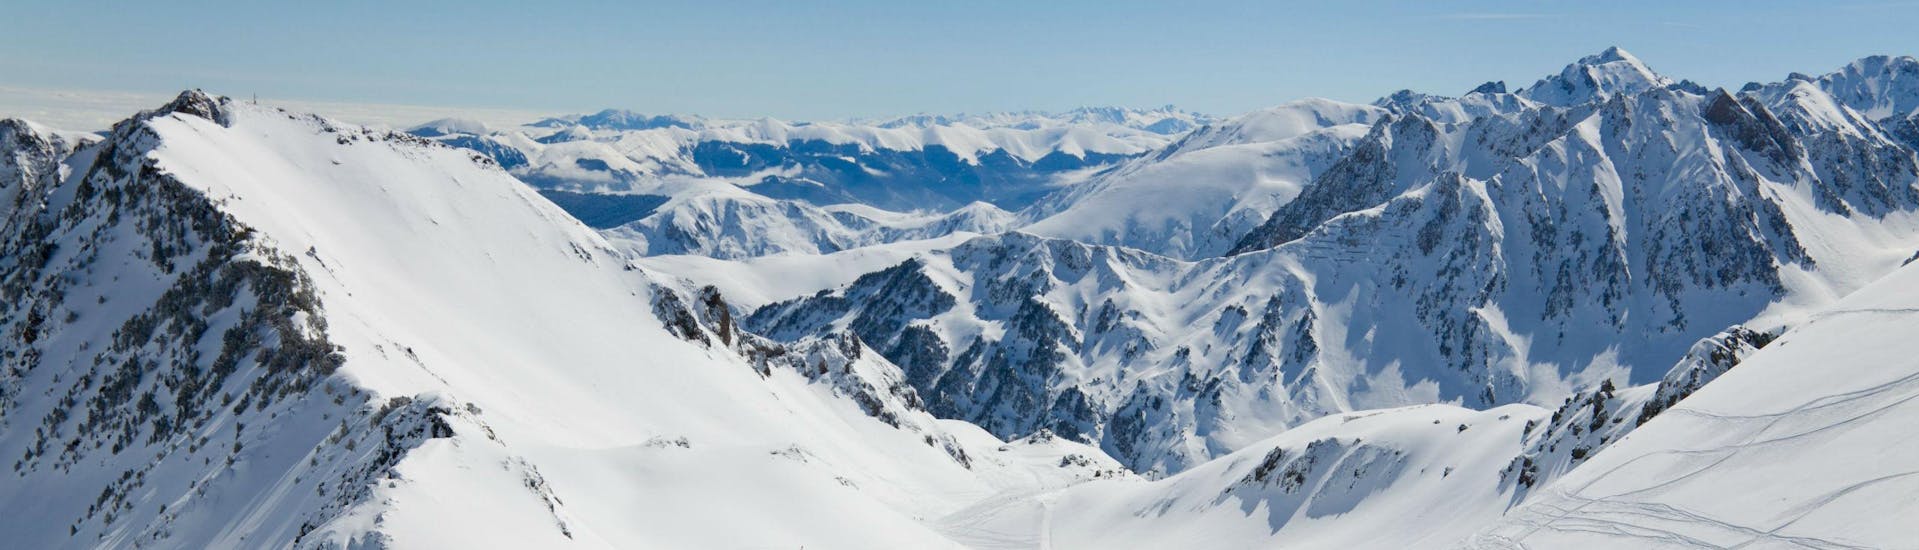 Un snowboardeur admire la vue magnifique sur les Pyrénées enneigées depuis l'une des pistes de La Mongie, où les écoles de ski locales proposent un vaste choix de cours de ski.